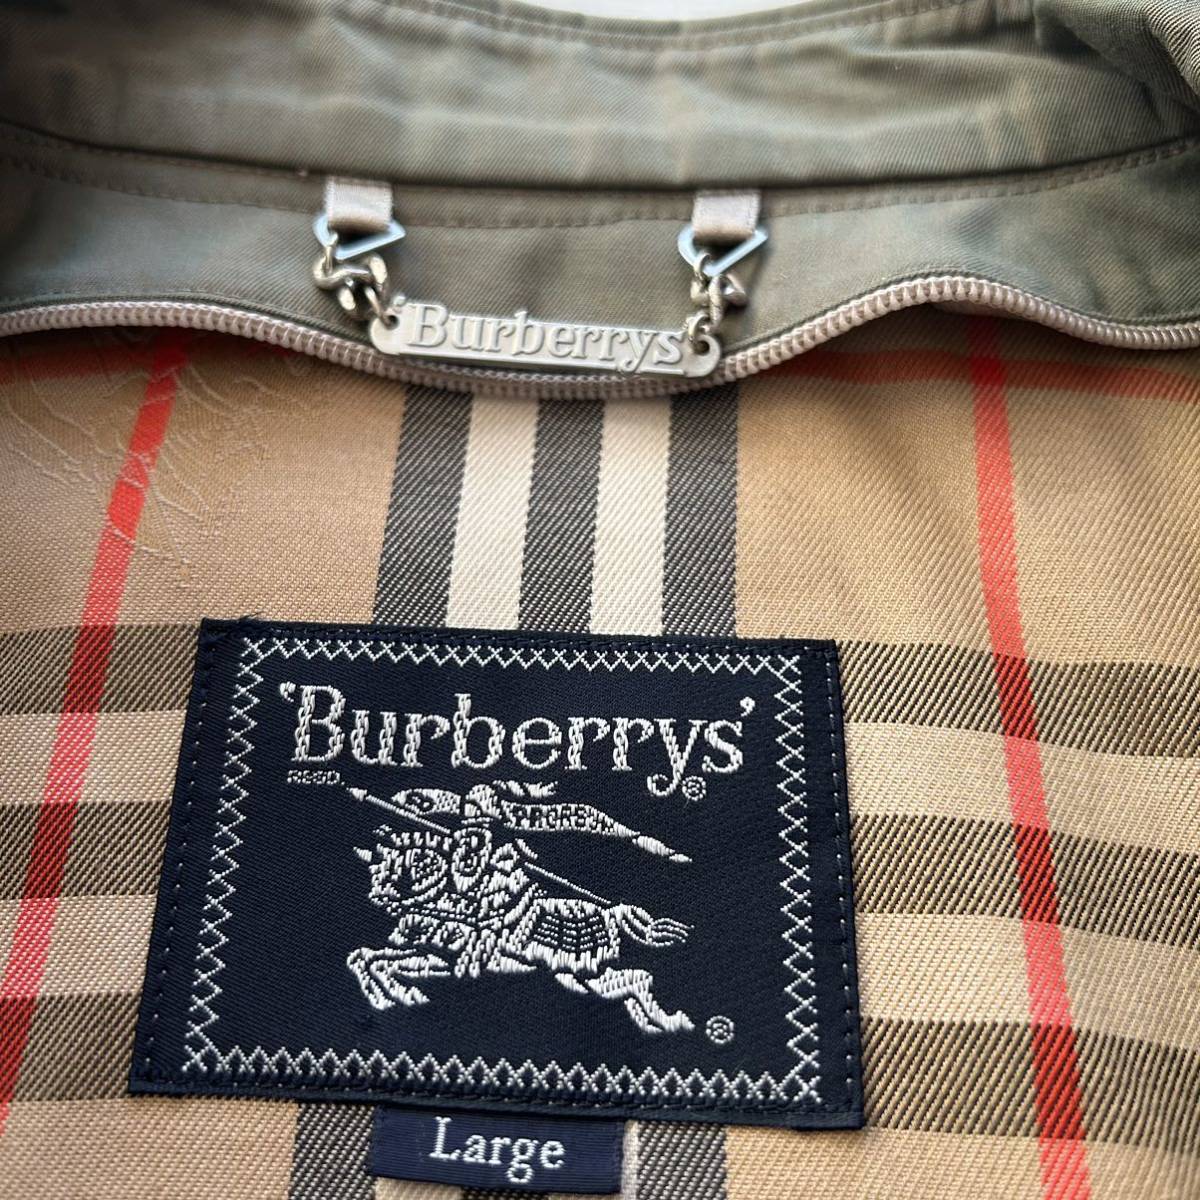 BURBERRY'S 希少玉虫色 一枚袖 ステンカラーコート ライナー付き Lサイズ 美品 ヴィンテージ_画像3